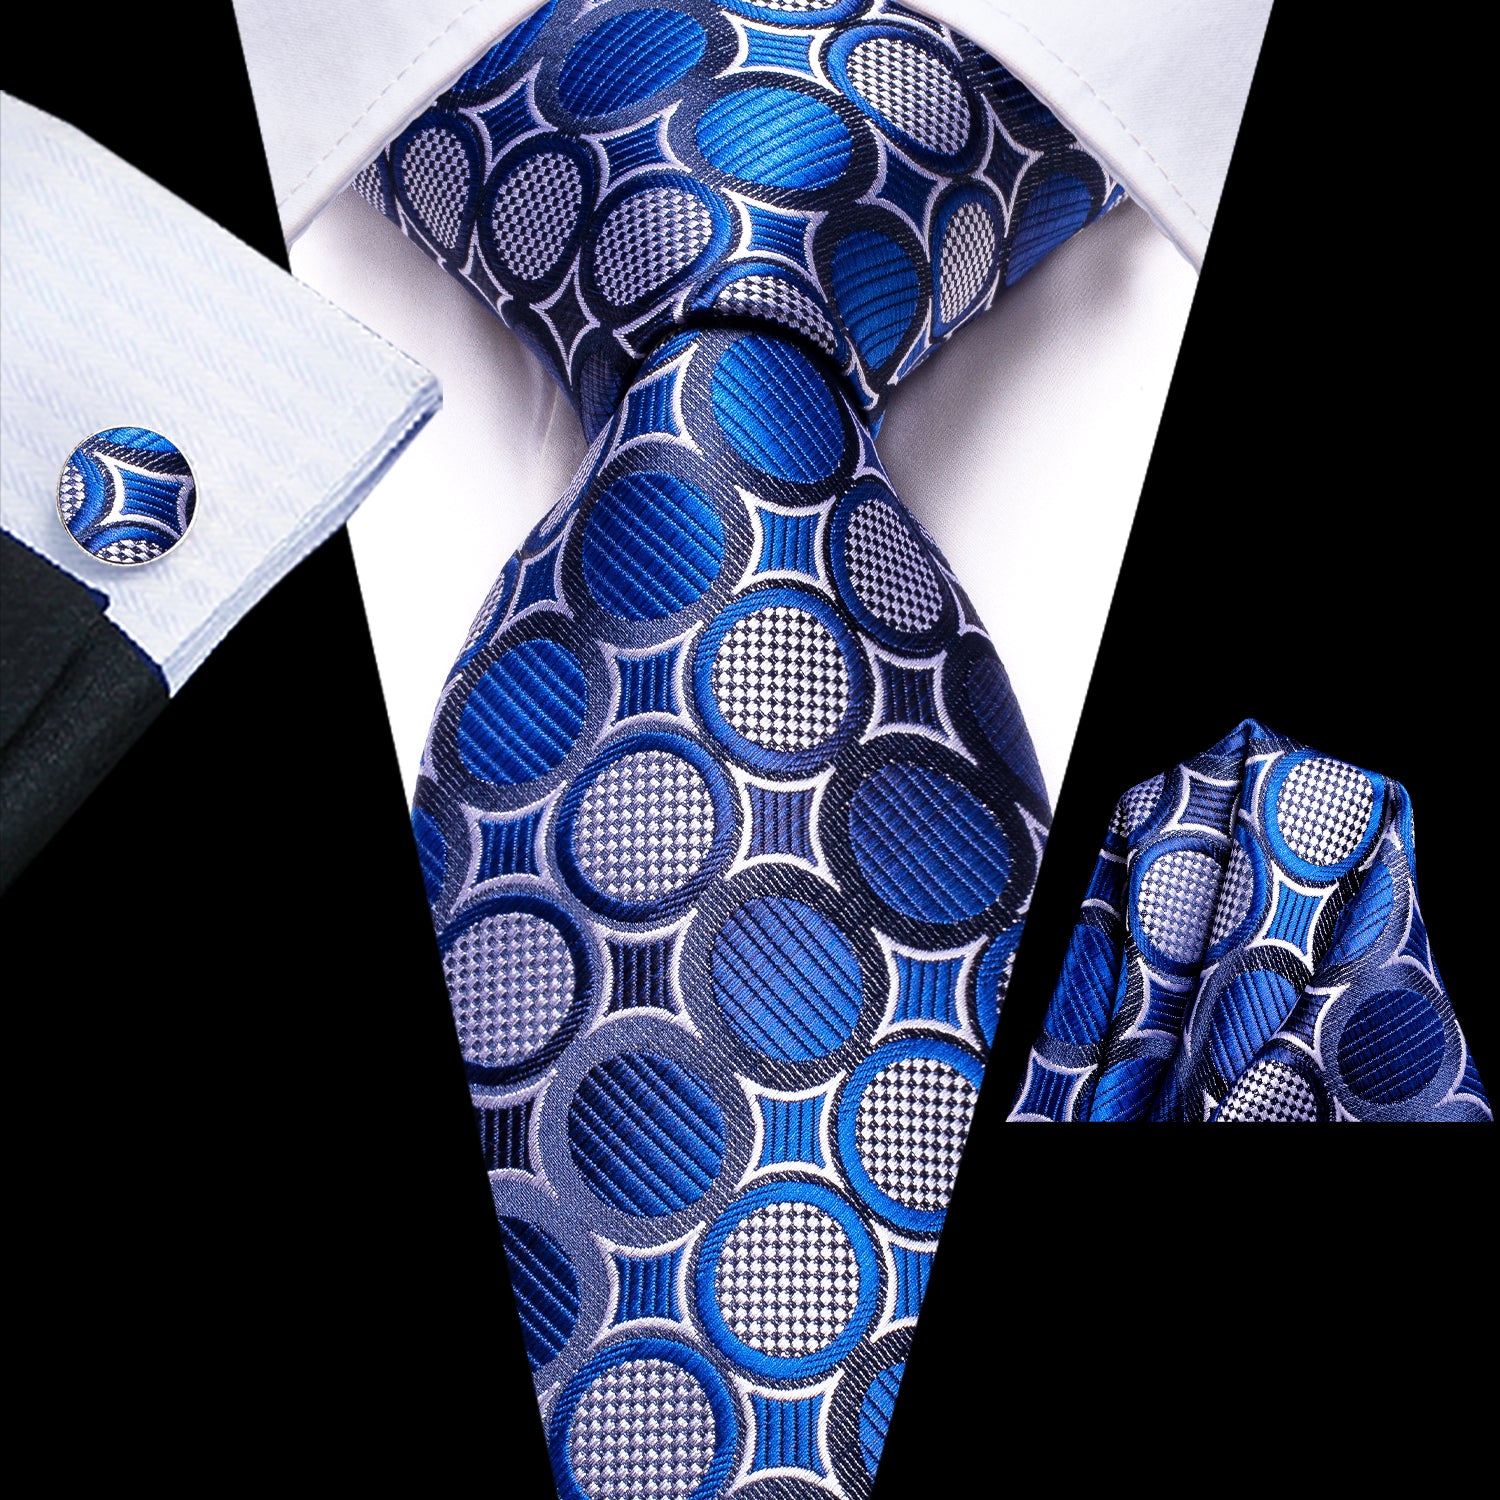 blue tie for suit